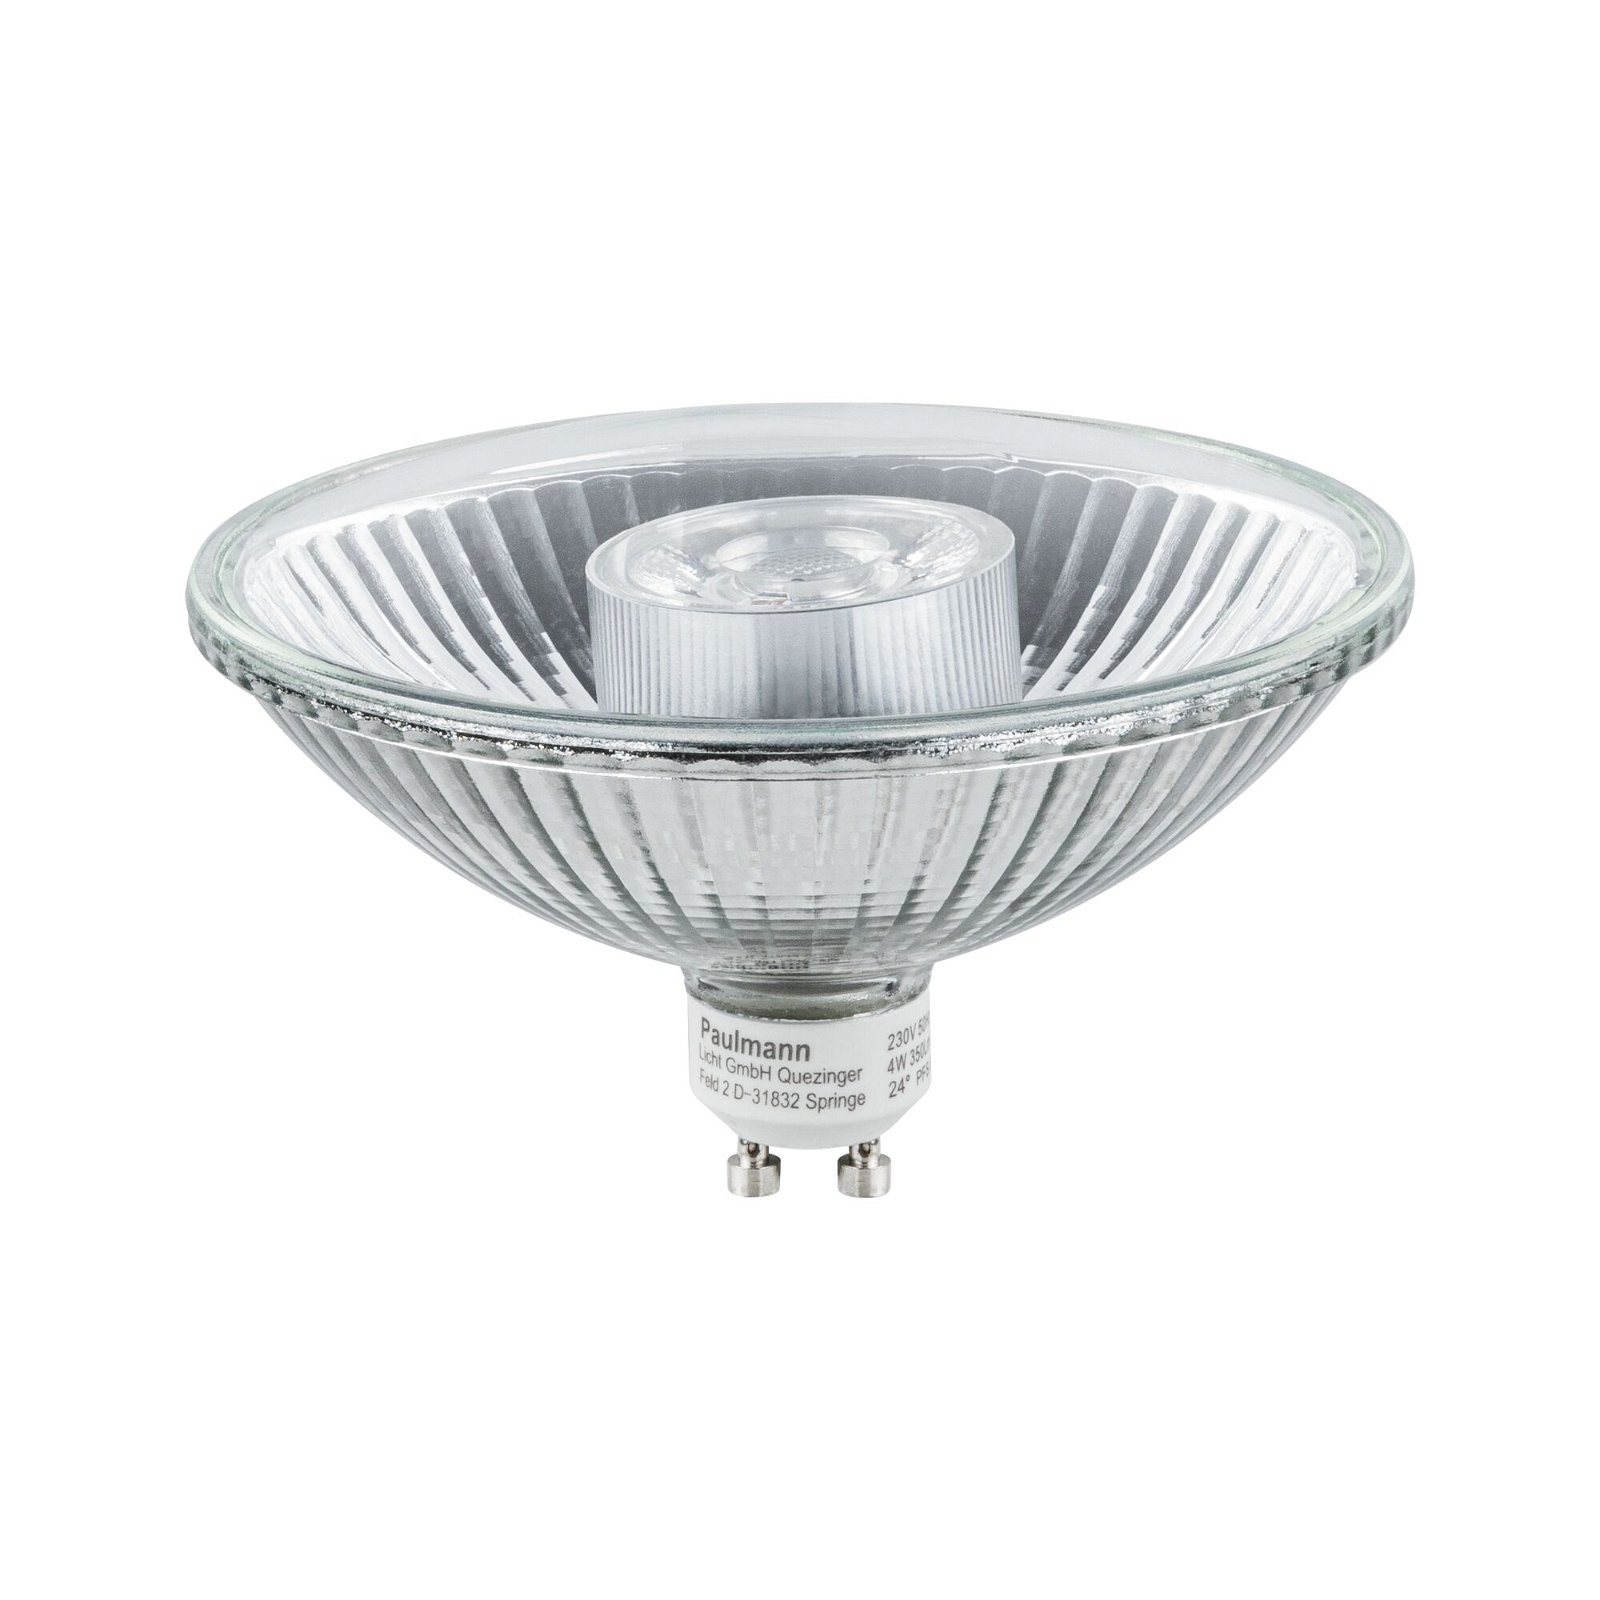 Paulmann 282.85 Diamond LED Reflektor 3W GU10 Warmweiß Lampe 230V EEK A+ 